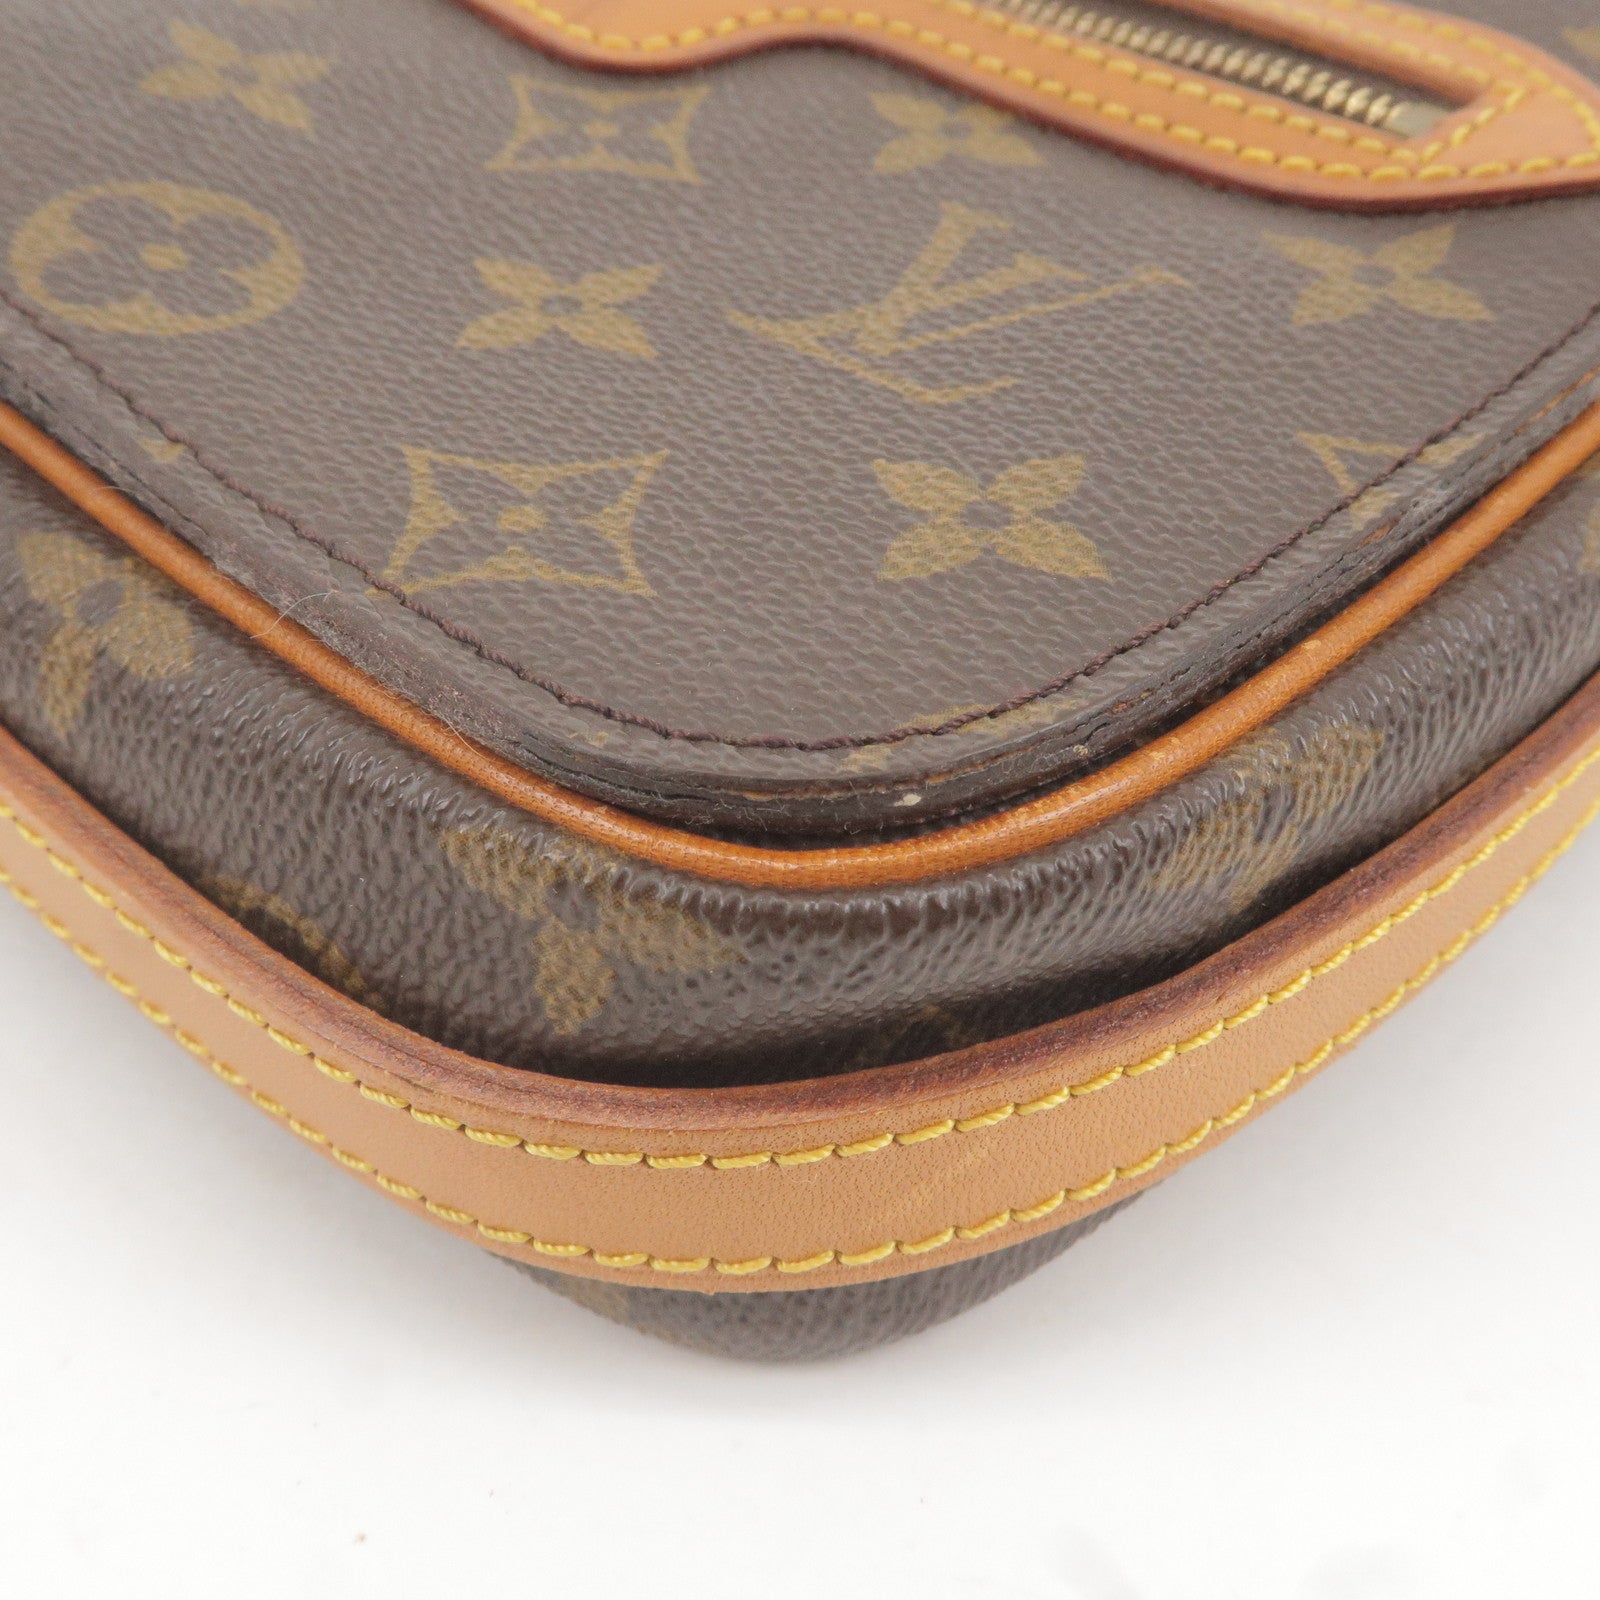 Louis Vuitton Saint Germain 24 Shoulder Bag M51210